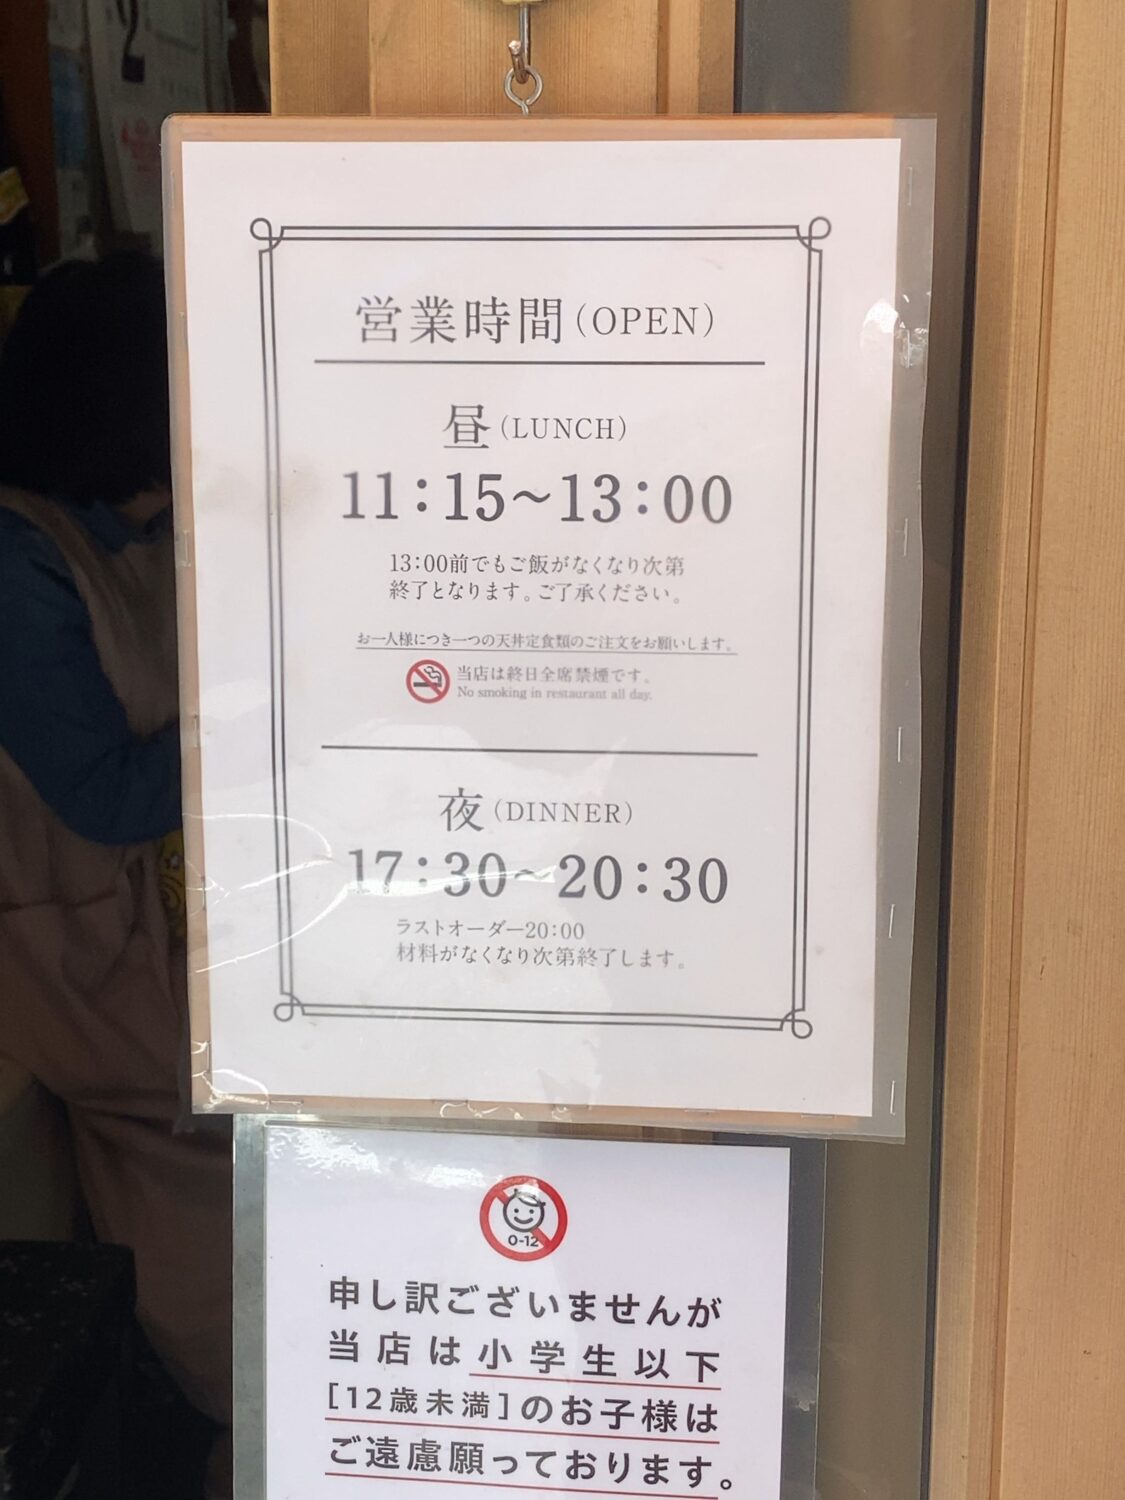 天ぷら中山の営業時間の貼り紙の写真